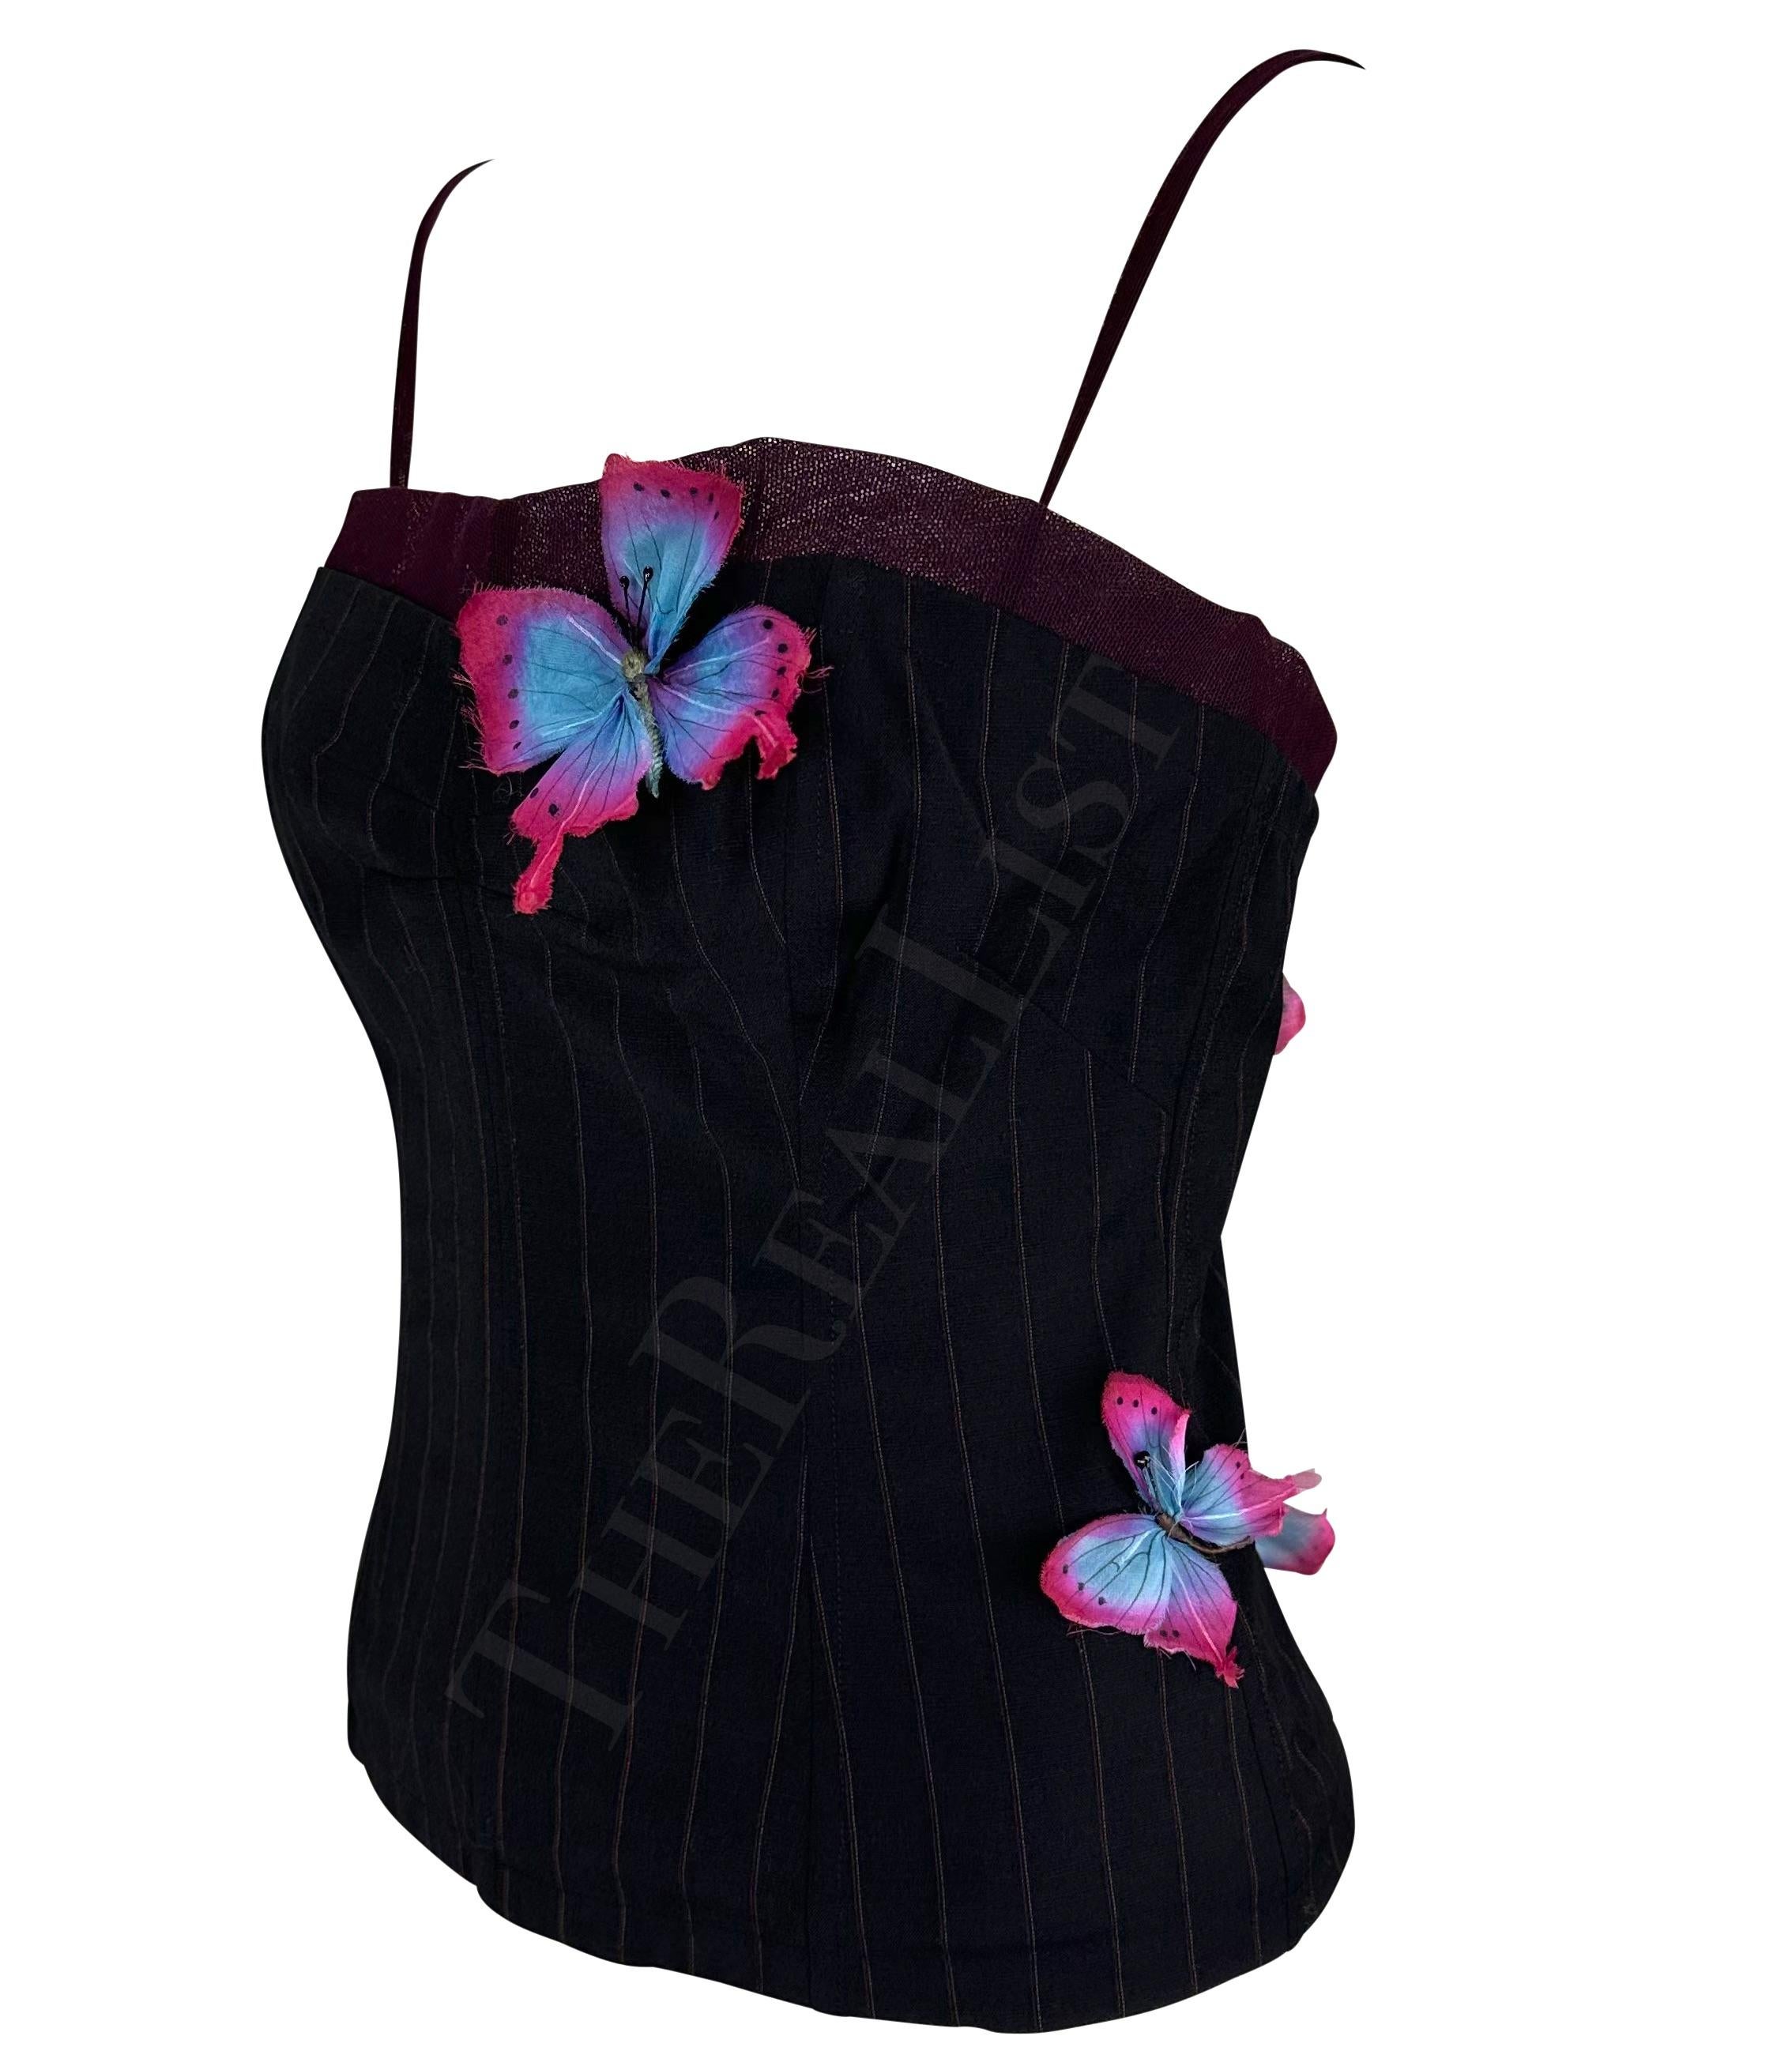 S/S 1998 Dolce & Gabbana Runway Pinstripe Butterfly Applique Boned Tank Top 1